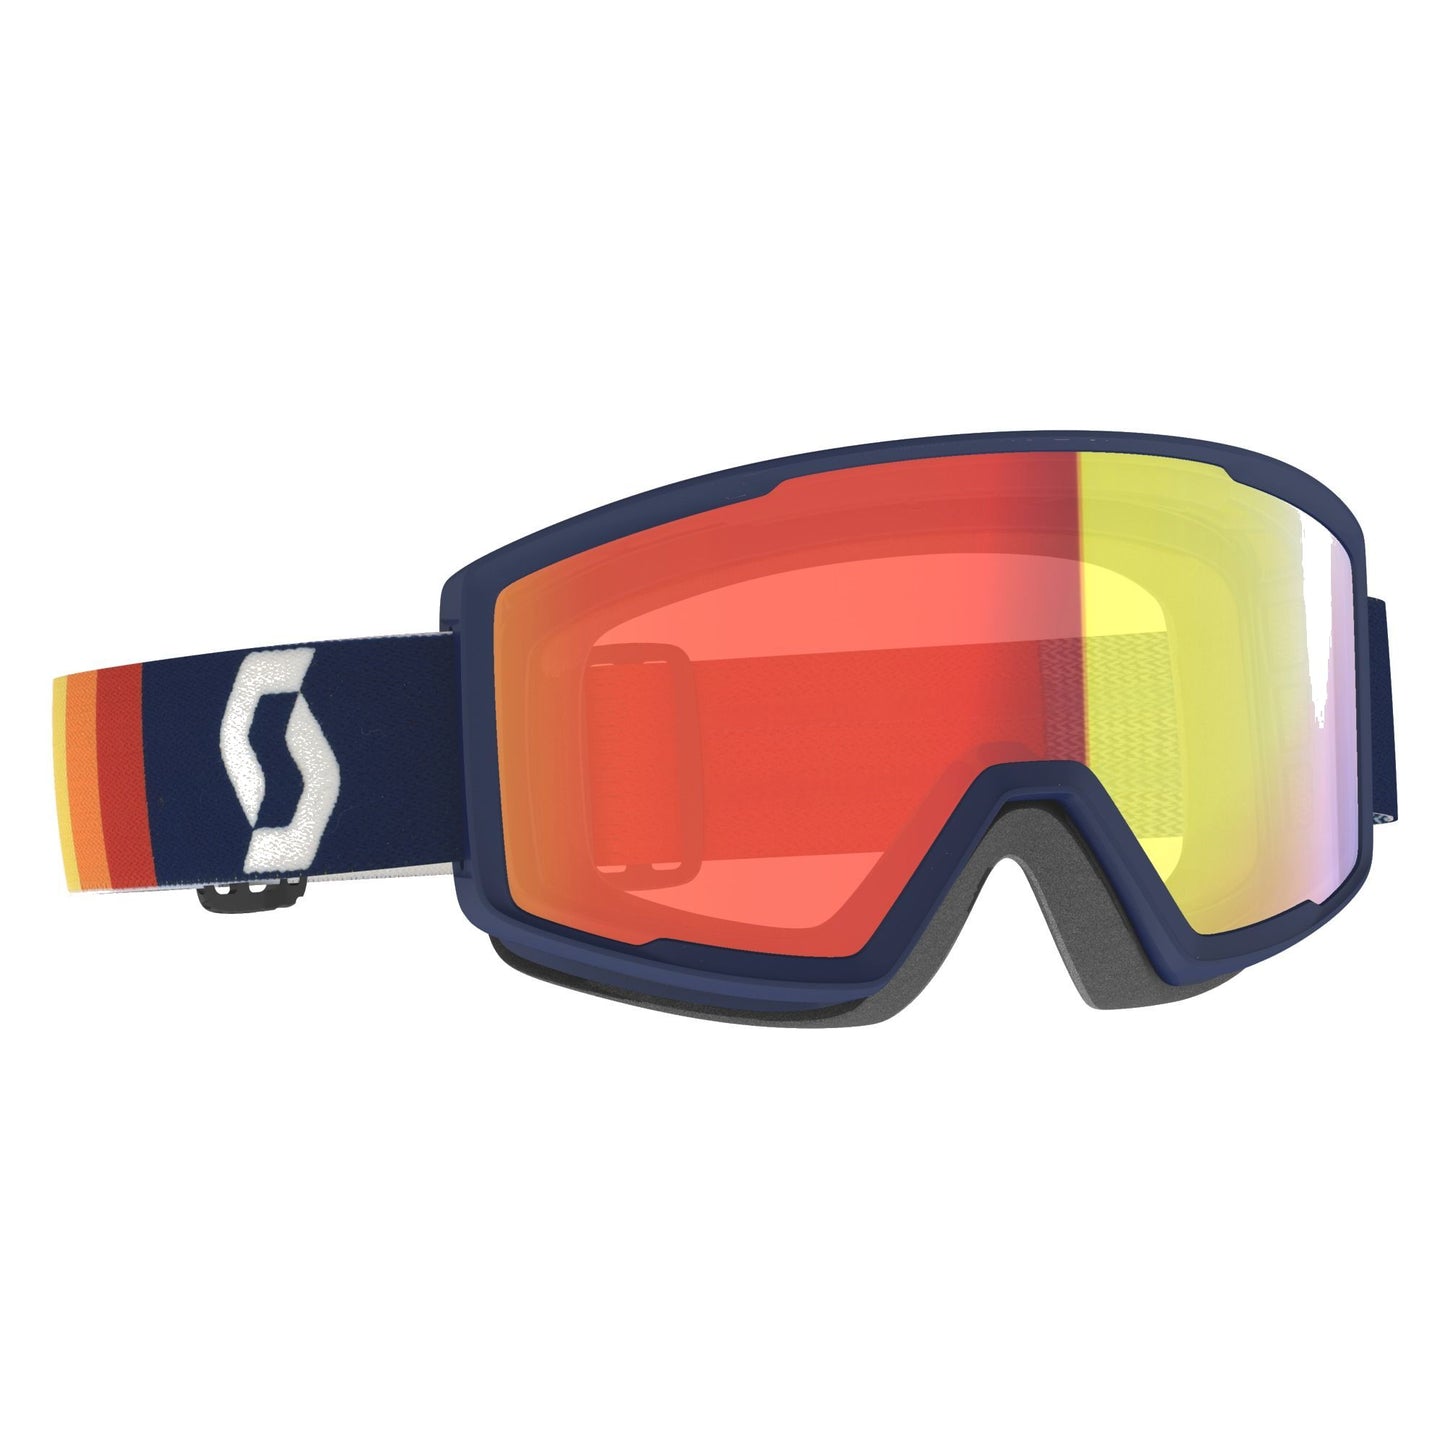 Scott Factor Pro Snow Goggle Retro Blue / Enhancer Red Chrome Snow Goggles